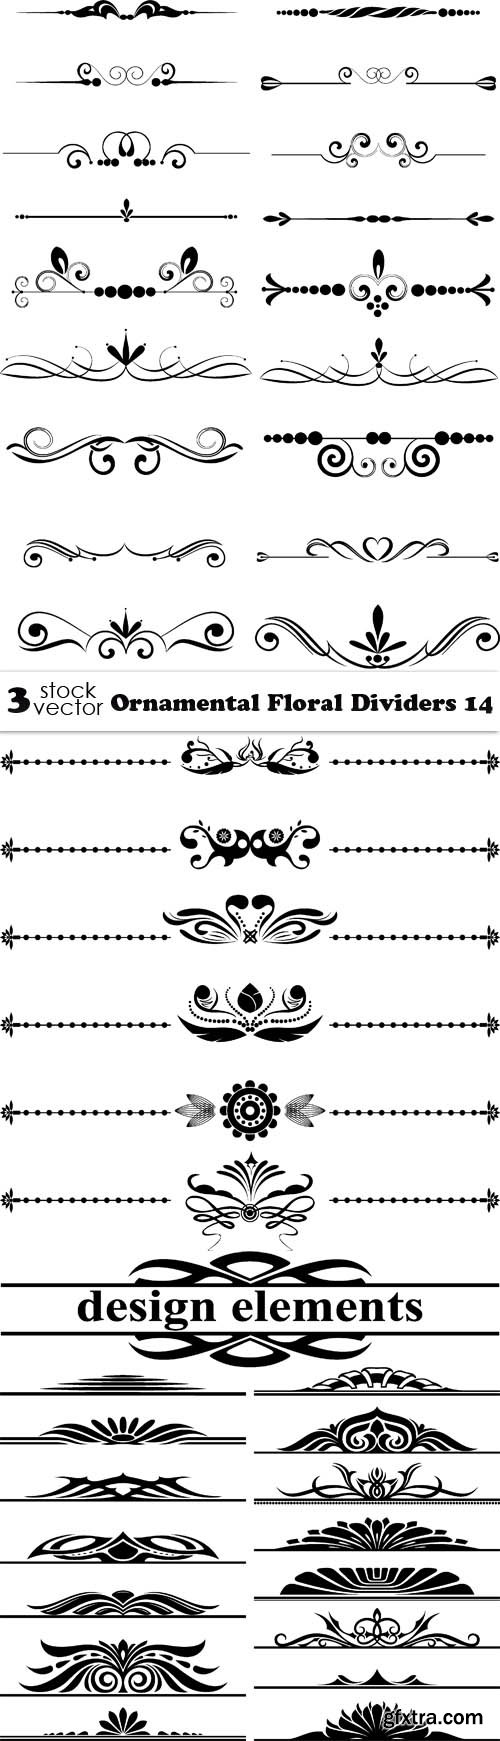 Vectors - Ornamental Floral Dividers 14